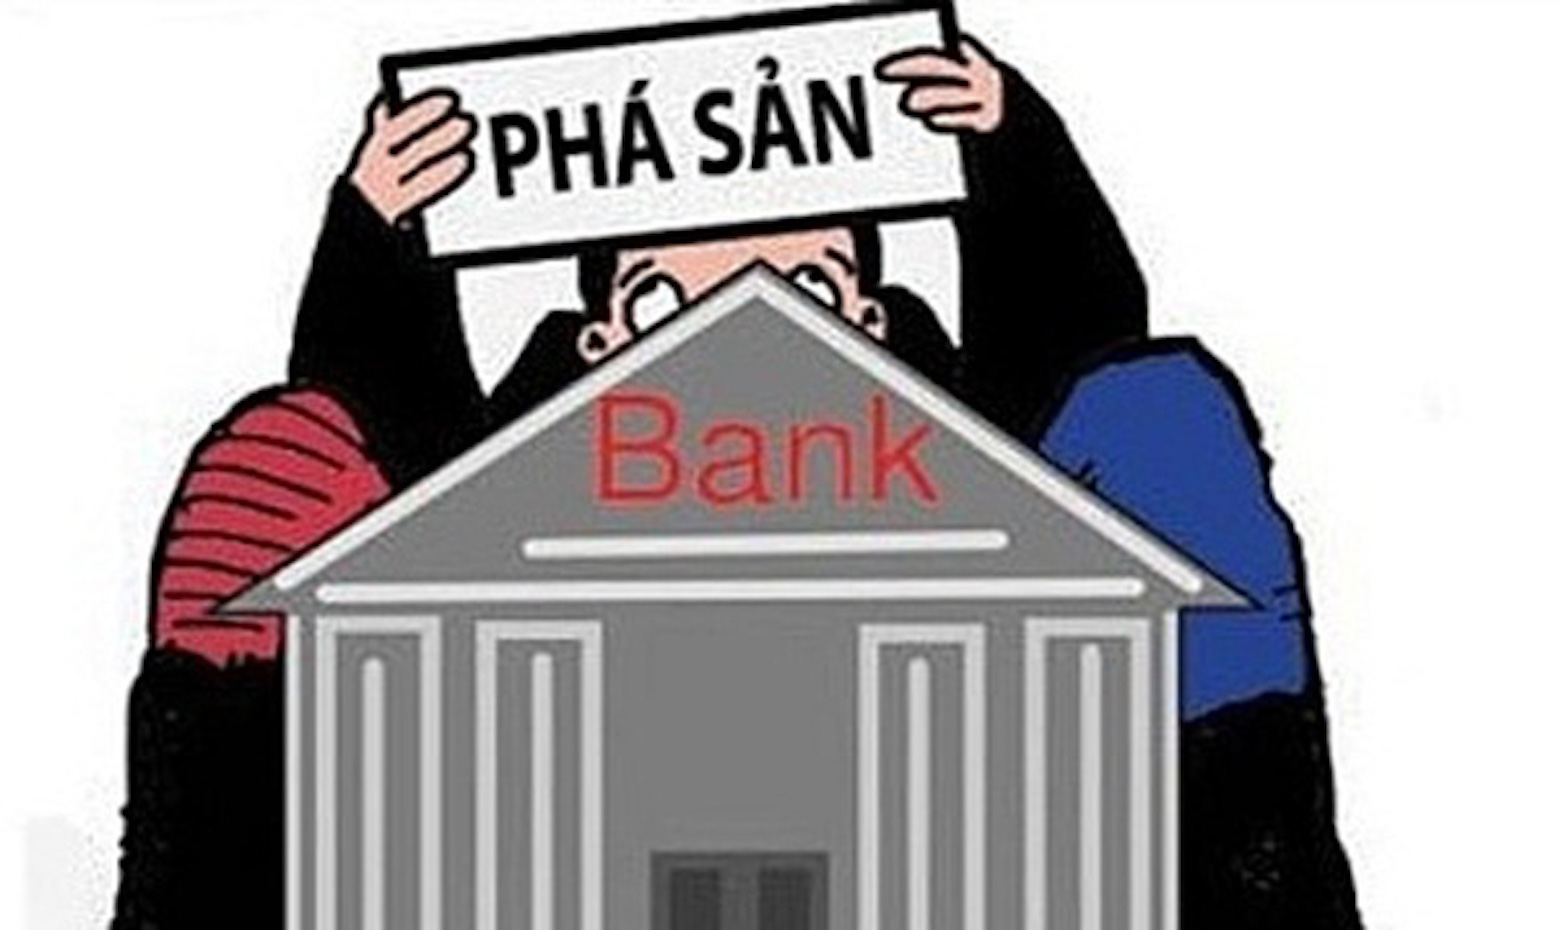 Sự phá sản của ngân hàng là gì? Điều gì xảy ra khi một ngân hàng phá sản?